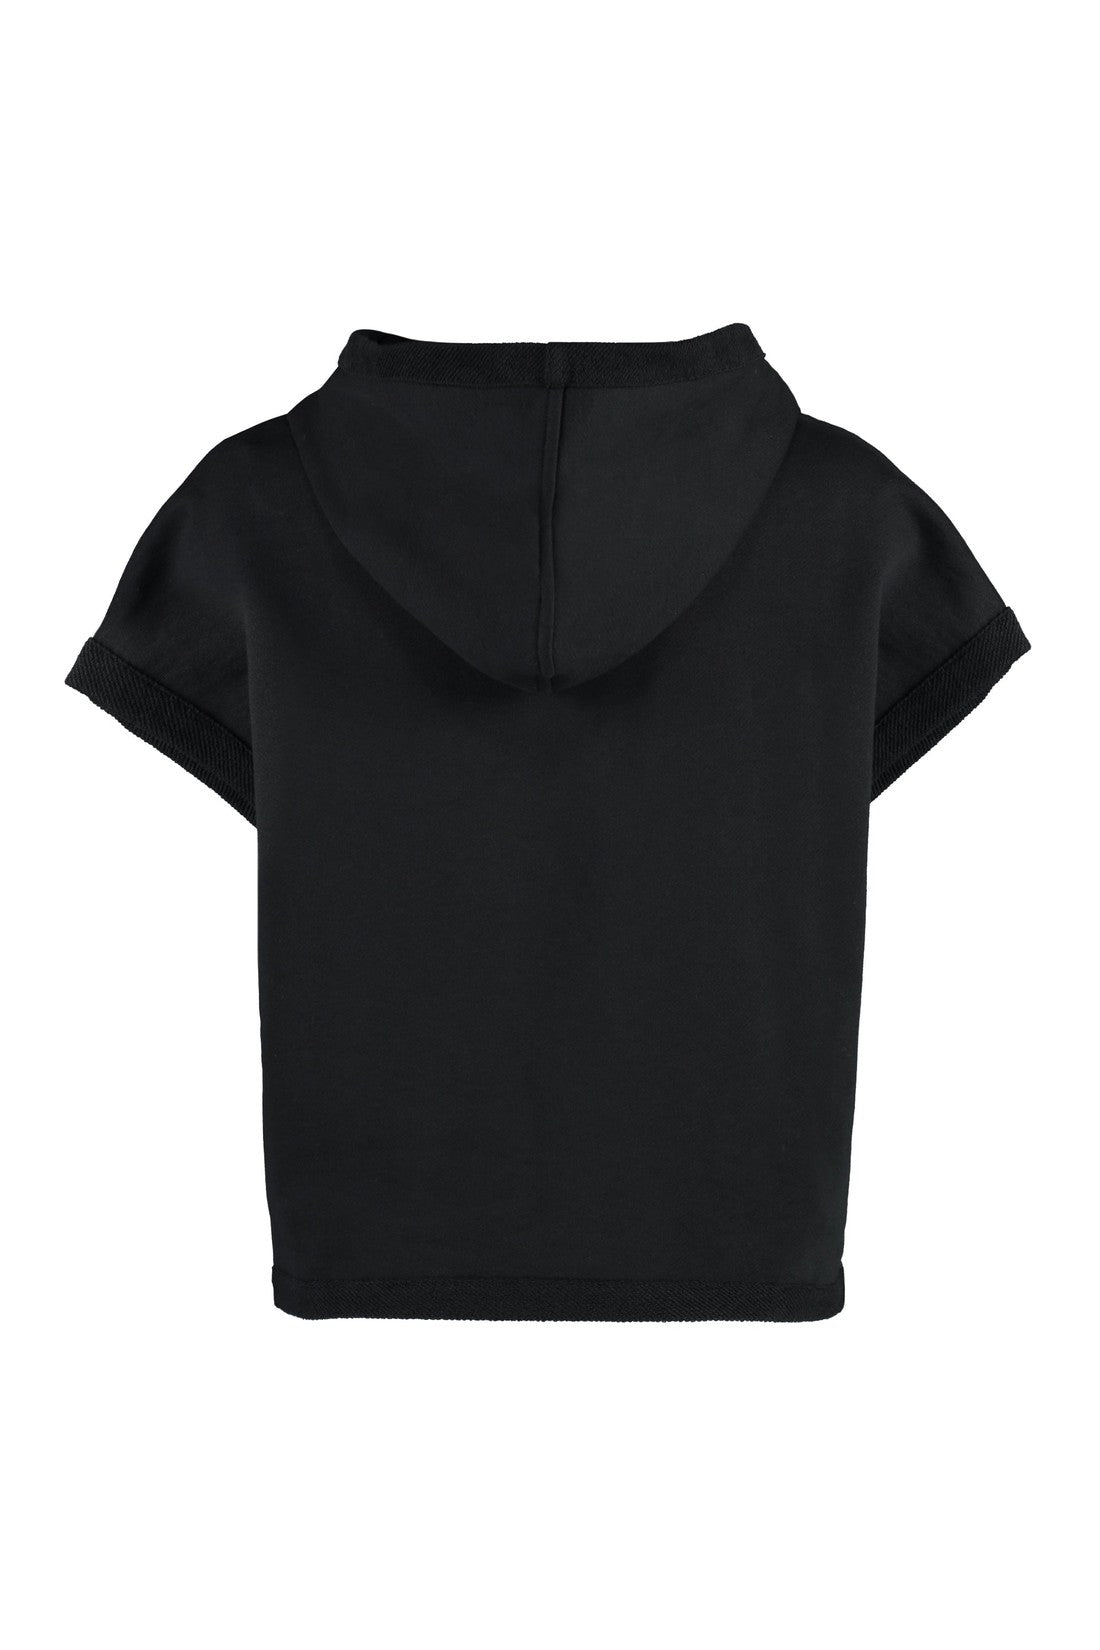 Emilio Pucci-OUTLET-SALE-Sleeveless cotton sweatshirt-ARCHIVIST